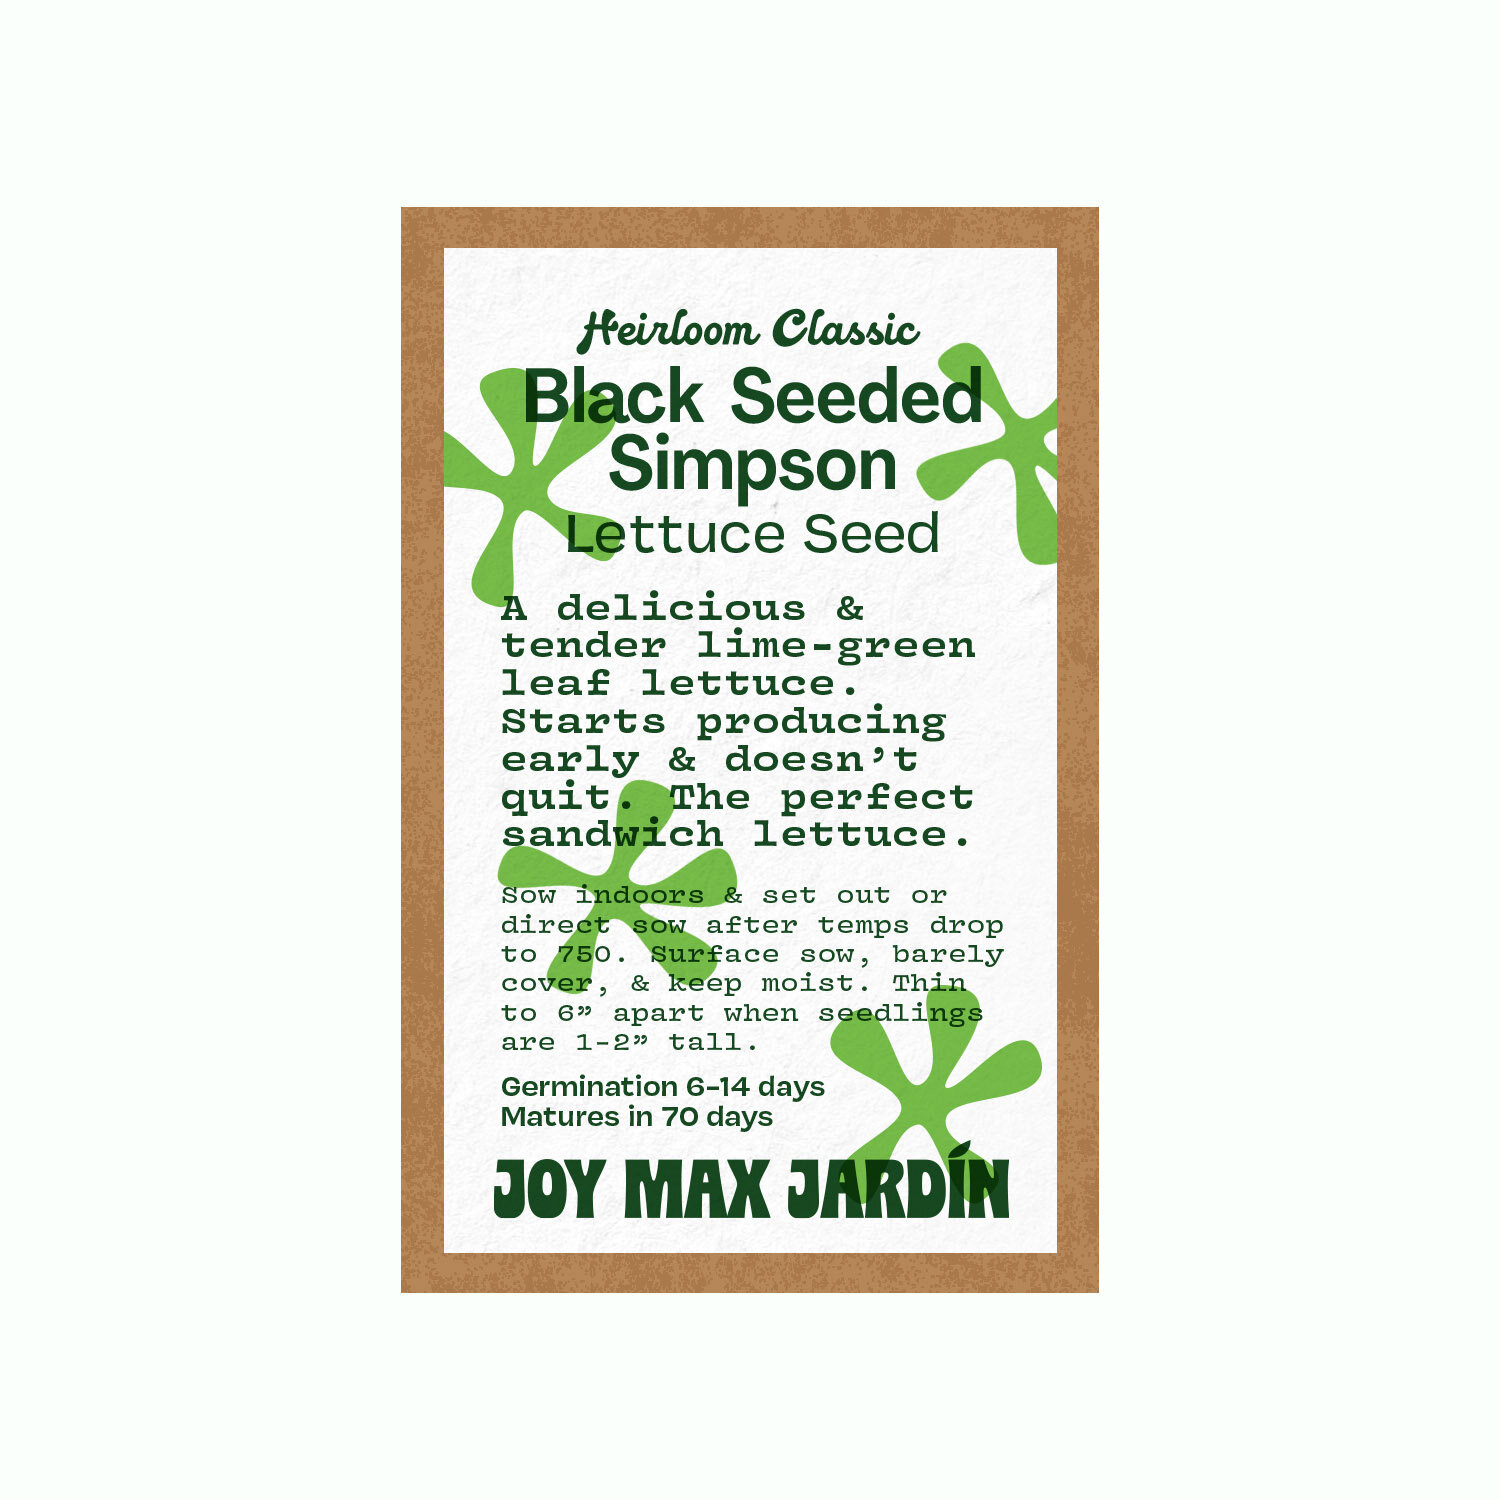 Joy Max Jardin Black Seeded Simpson.jpg